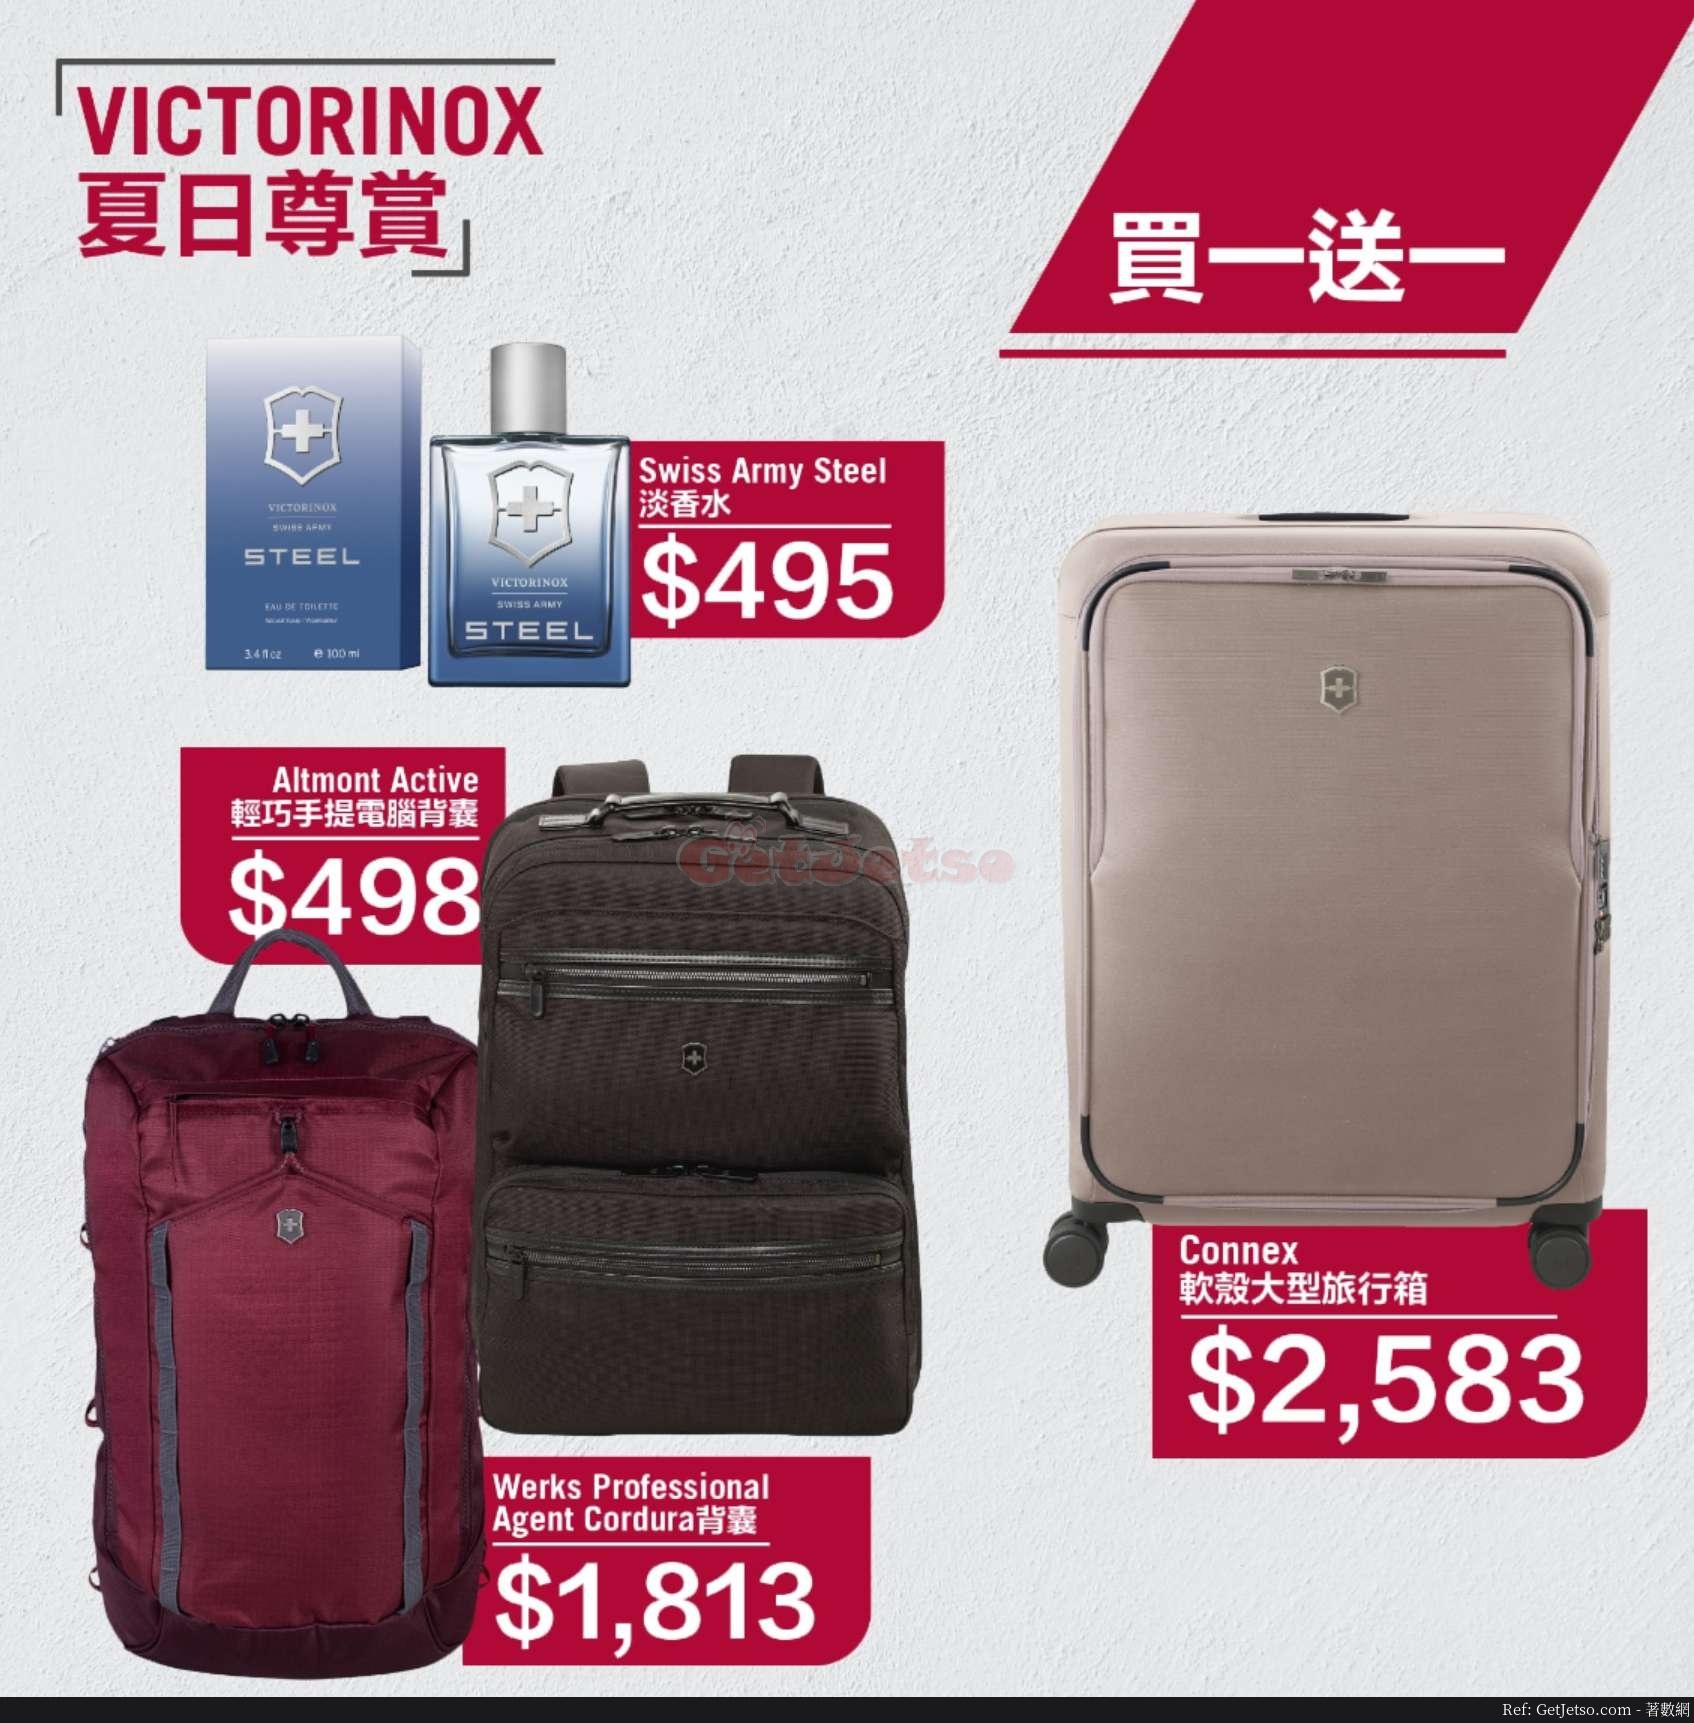 VICTORINOX低至5折減價優惠(20年6月10日起)圖片1